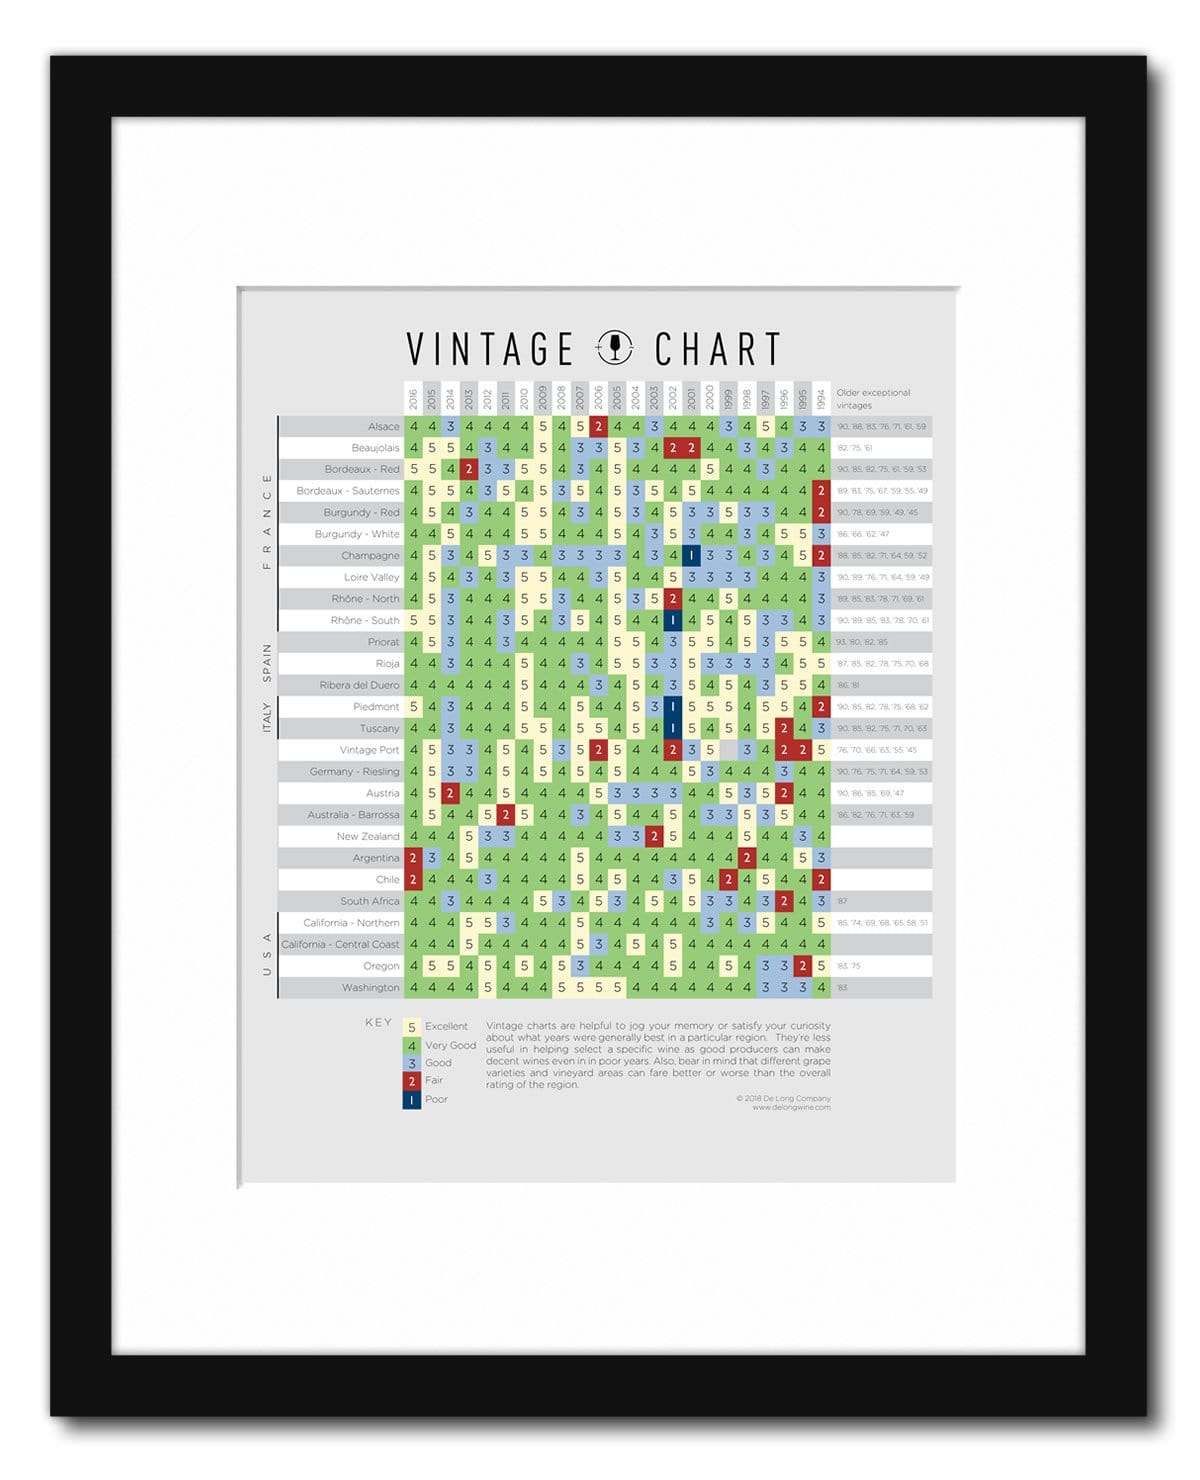 2019 Wine Vintage Chart